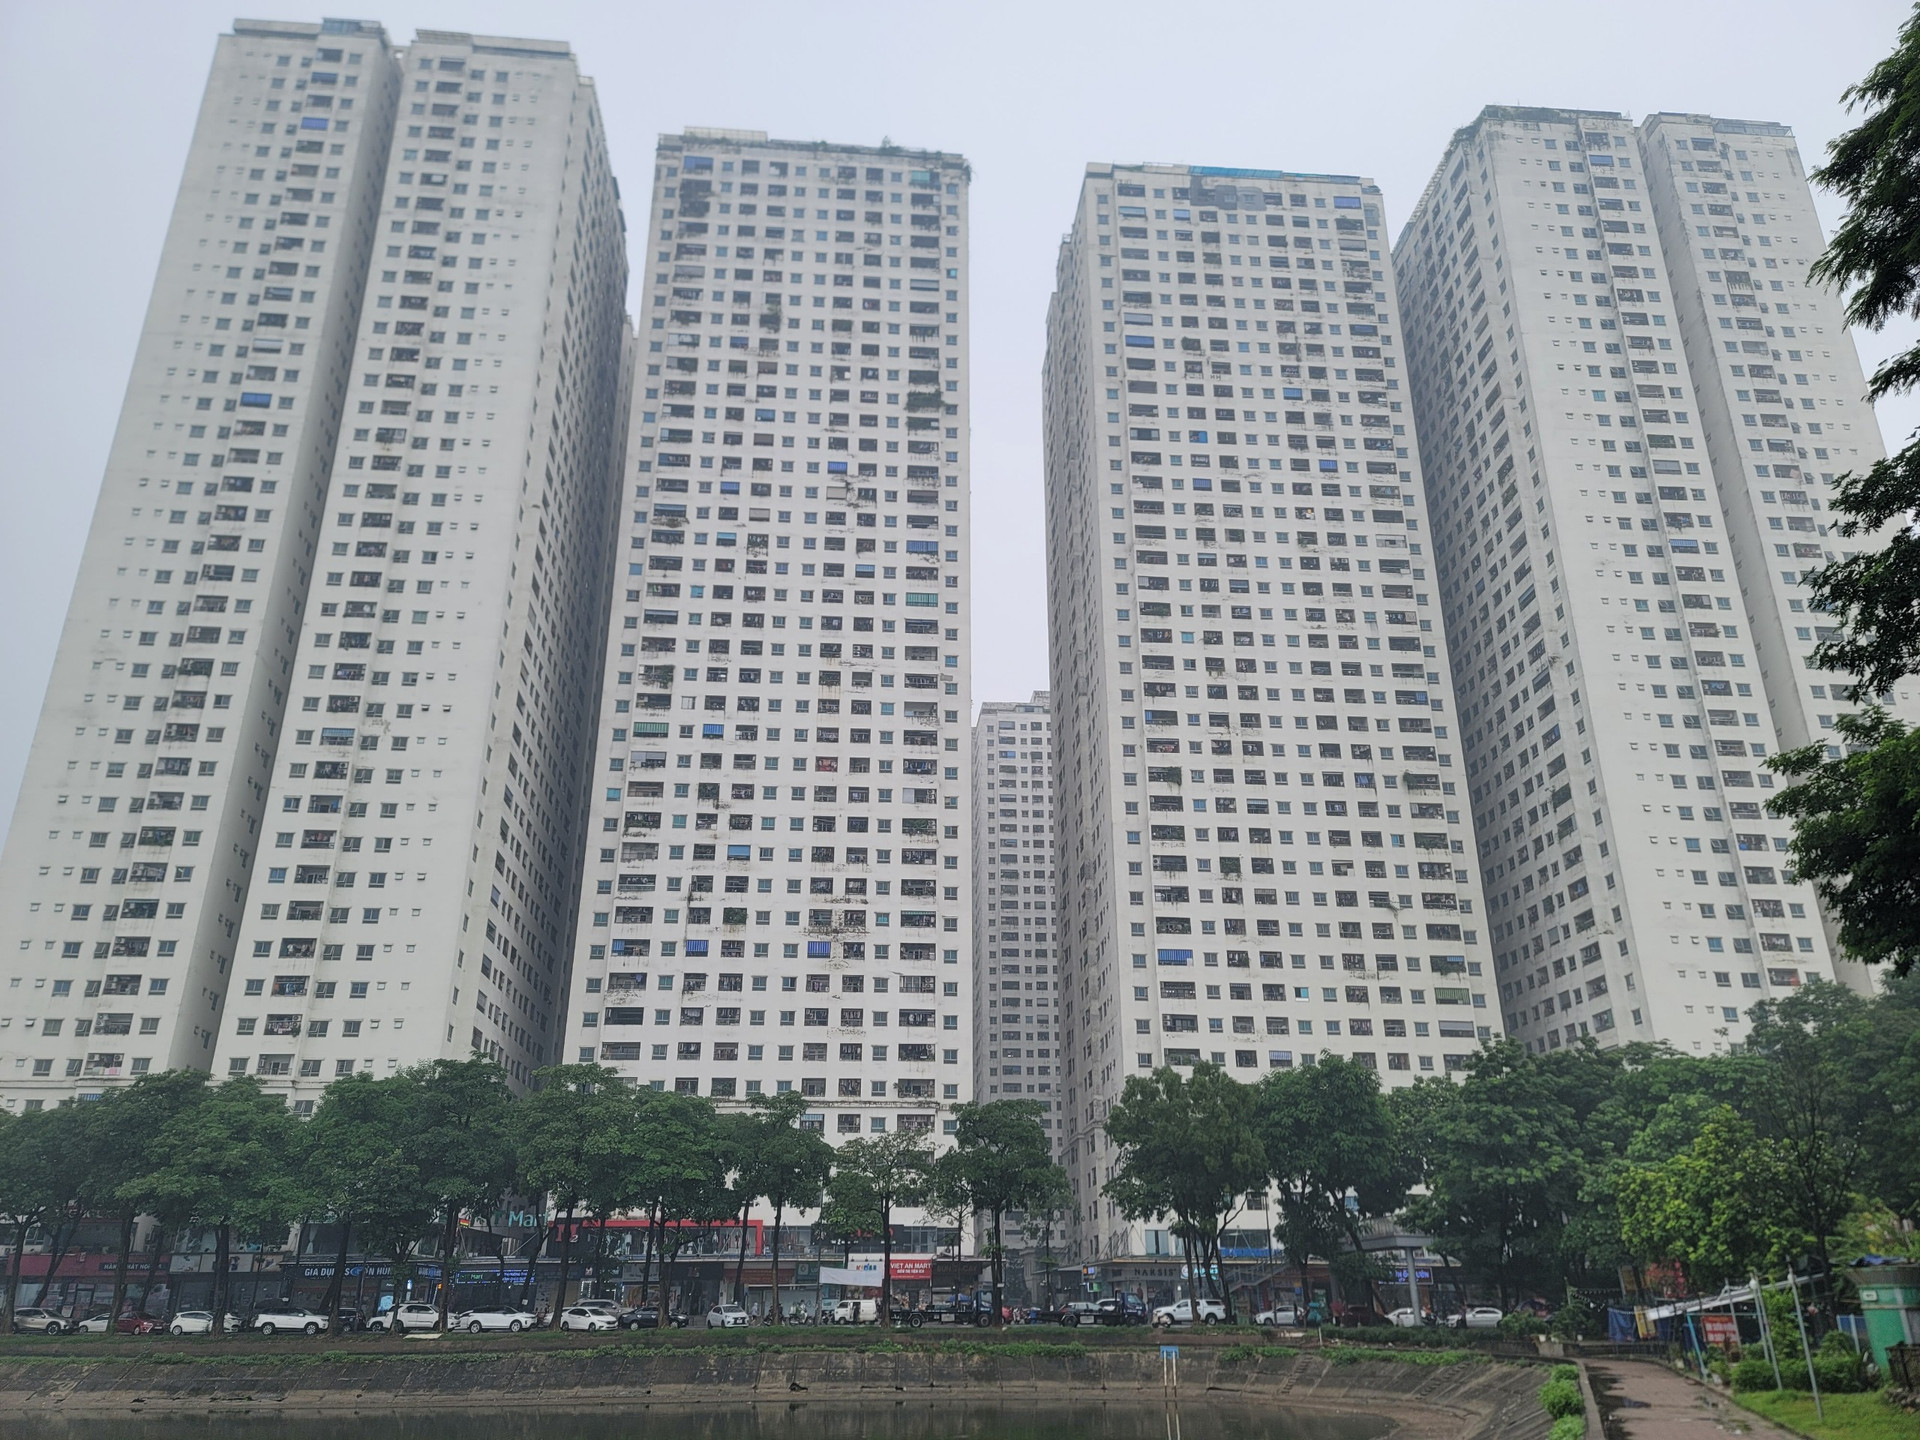 Chung cư HH Linh Đàm xây vượt số lượng căn hộ nghiêm trọng. Khu chung cư này đã có dân số bằng cả phường Hoàng Liệt (quận Hoàng Mai), phá vỡ các chỉ tiêu quy hoạch, gây quá tải về hạ tầng giao thông, hạ tầng xã hội, trường học, nhà trẻ tại khu vực.